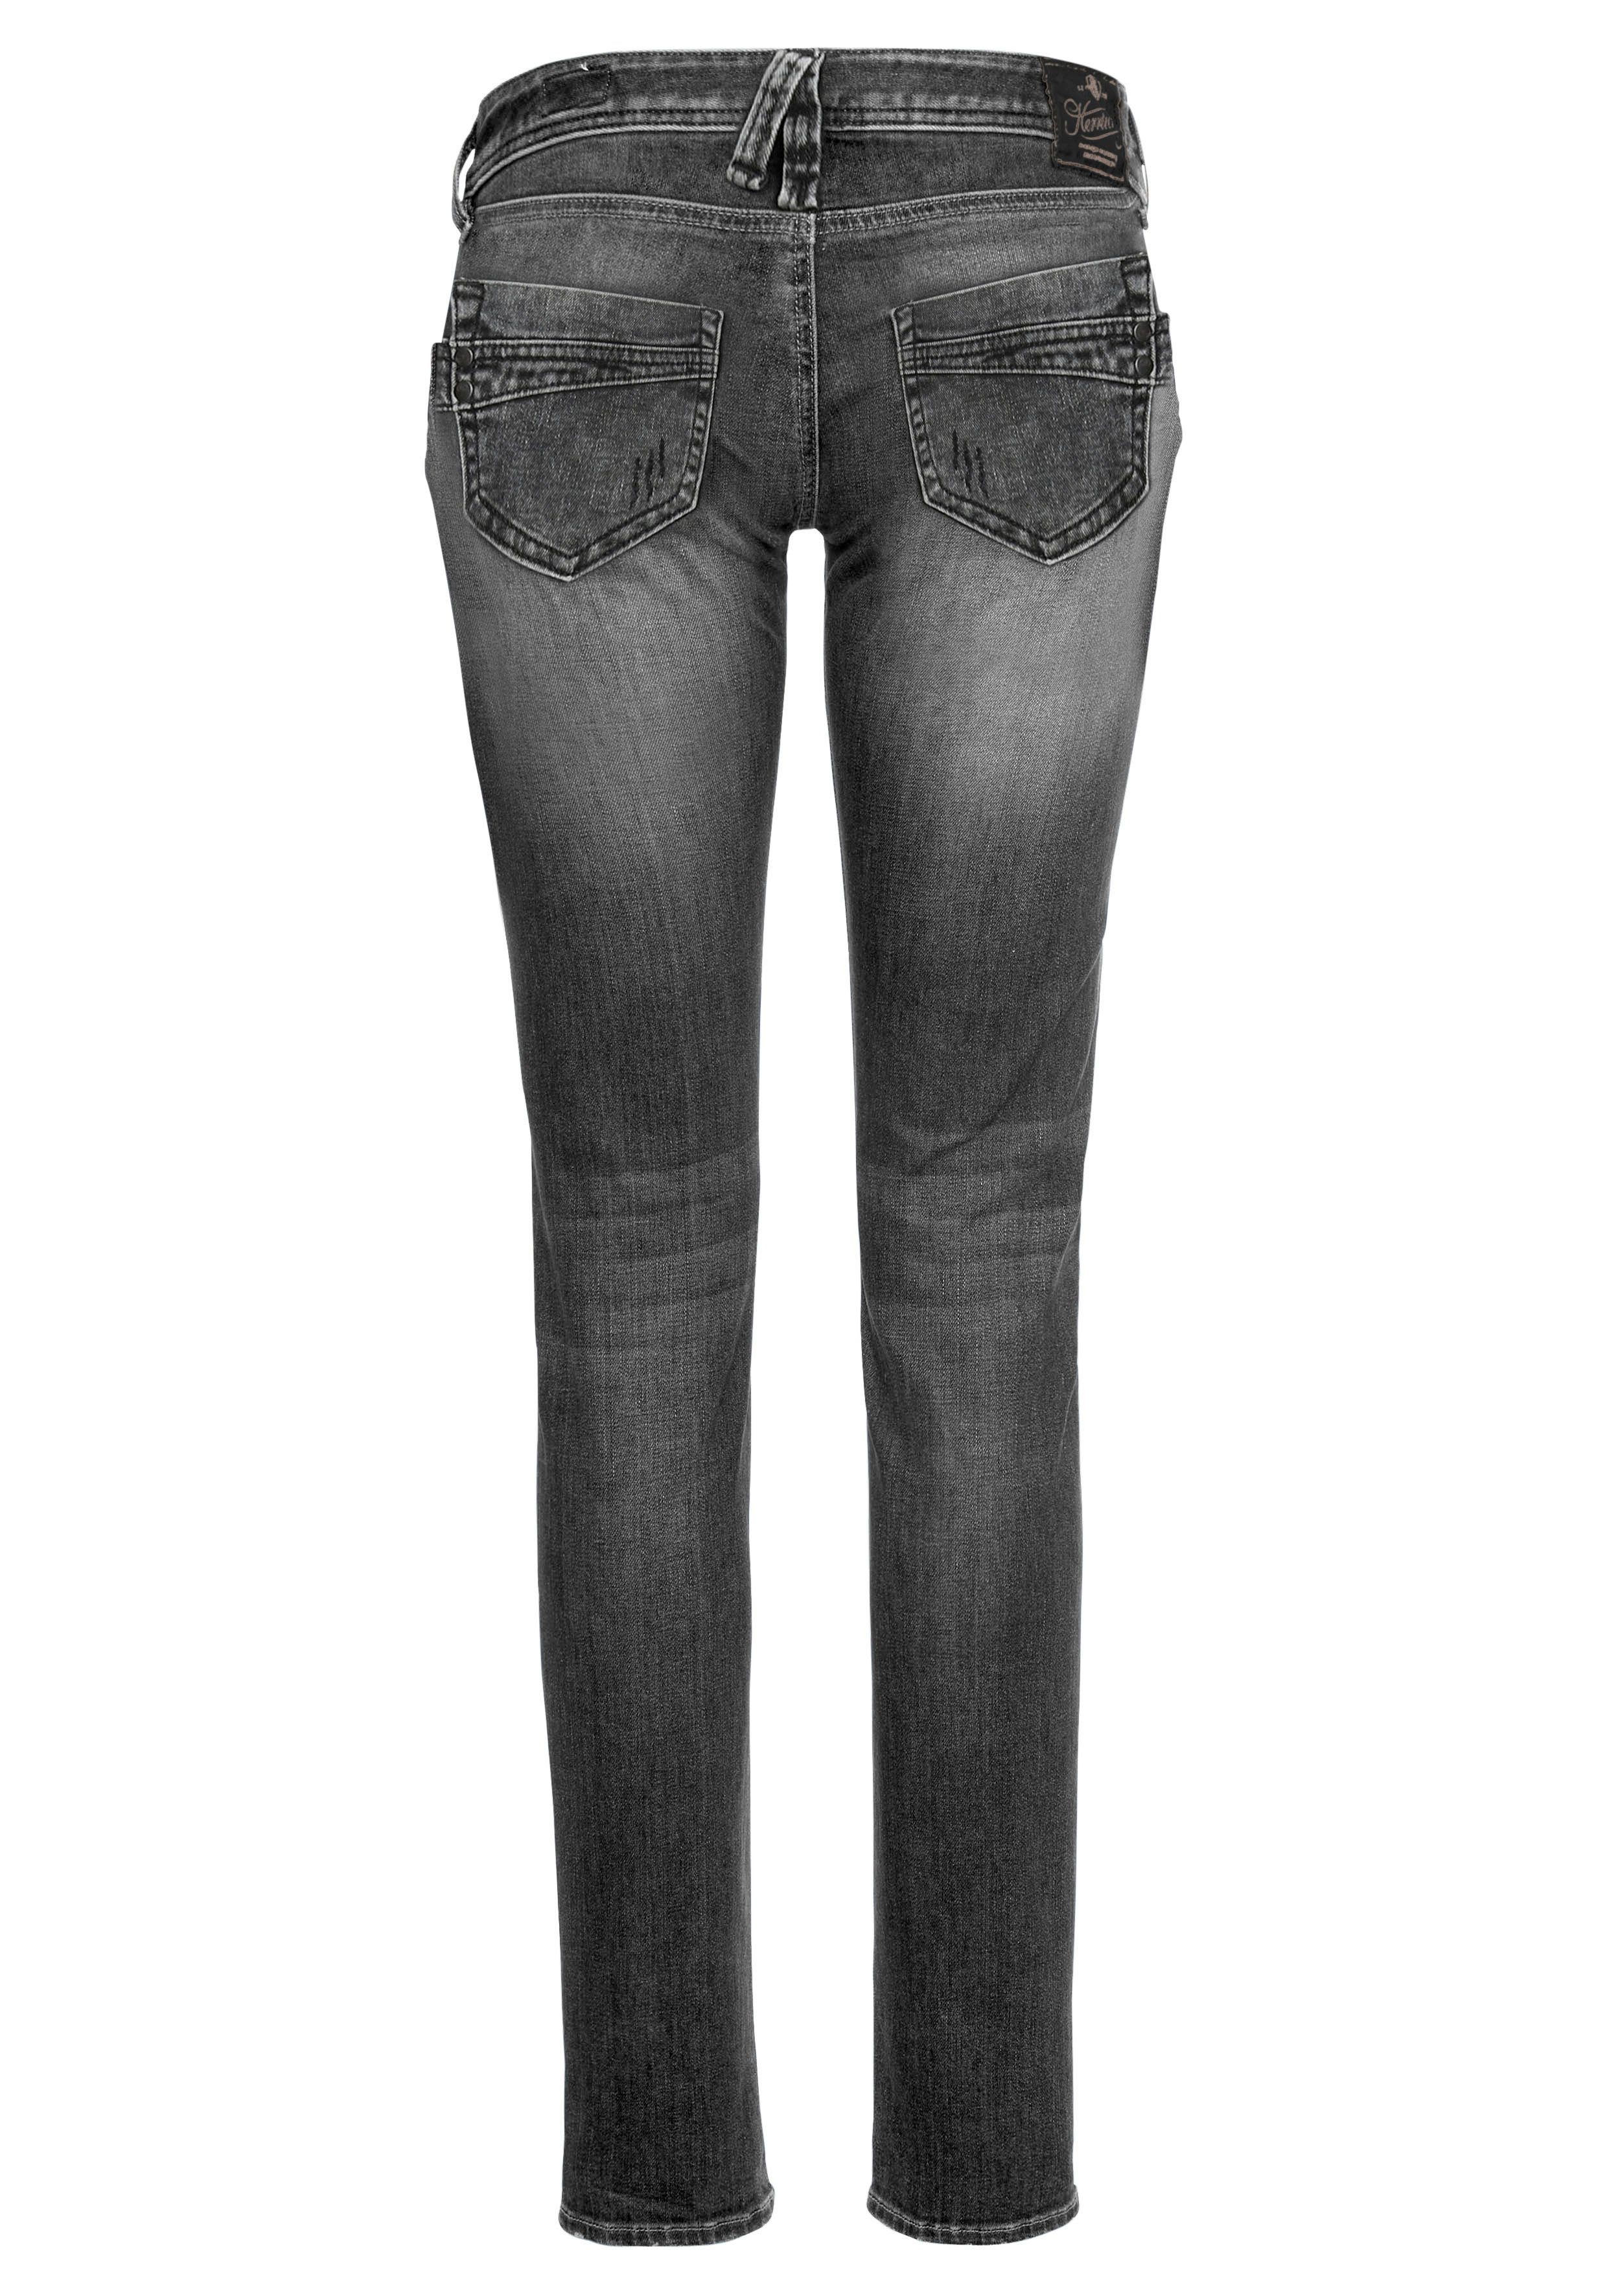 Damen Jeans Herrlicher Slim-fit-Jeans PIPER ORGANIC DENIM umweltfreundlich dank Kitotex Technologie